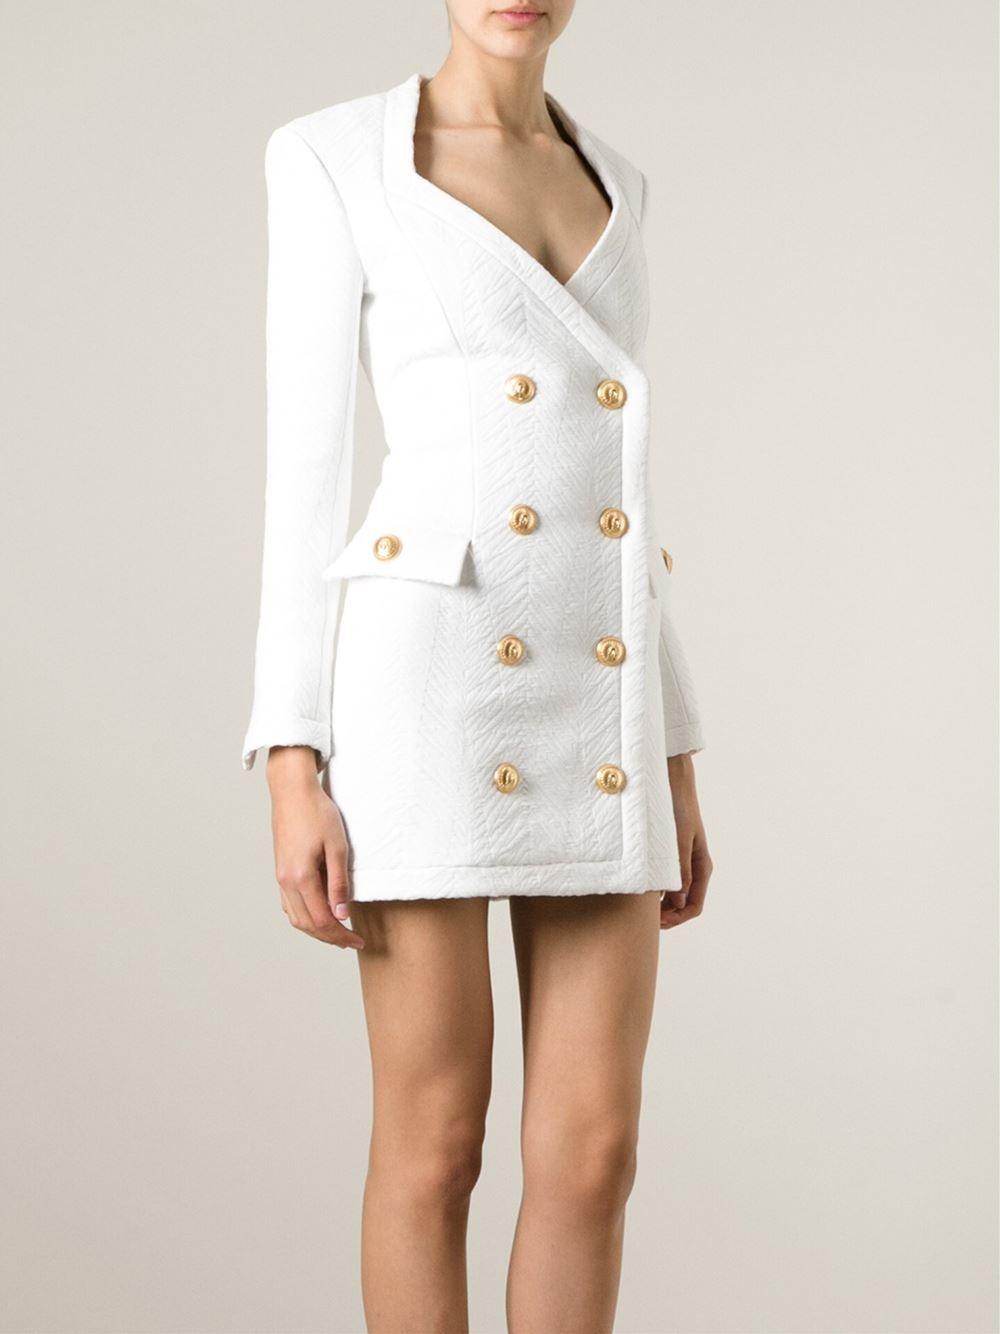 Balmain Textured Blazer Dress in White - Lyst